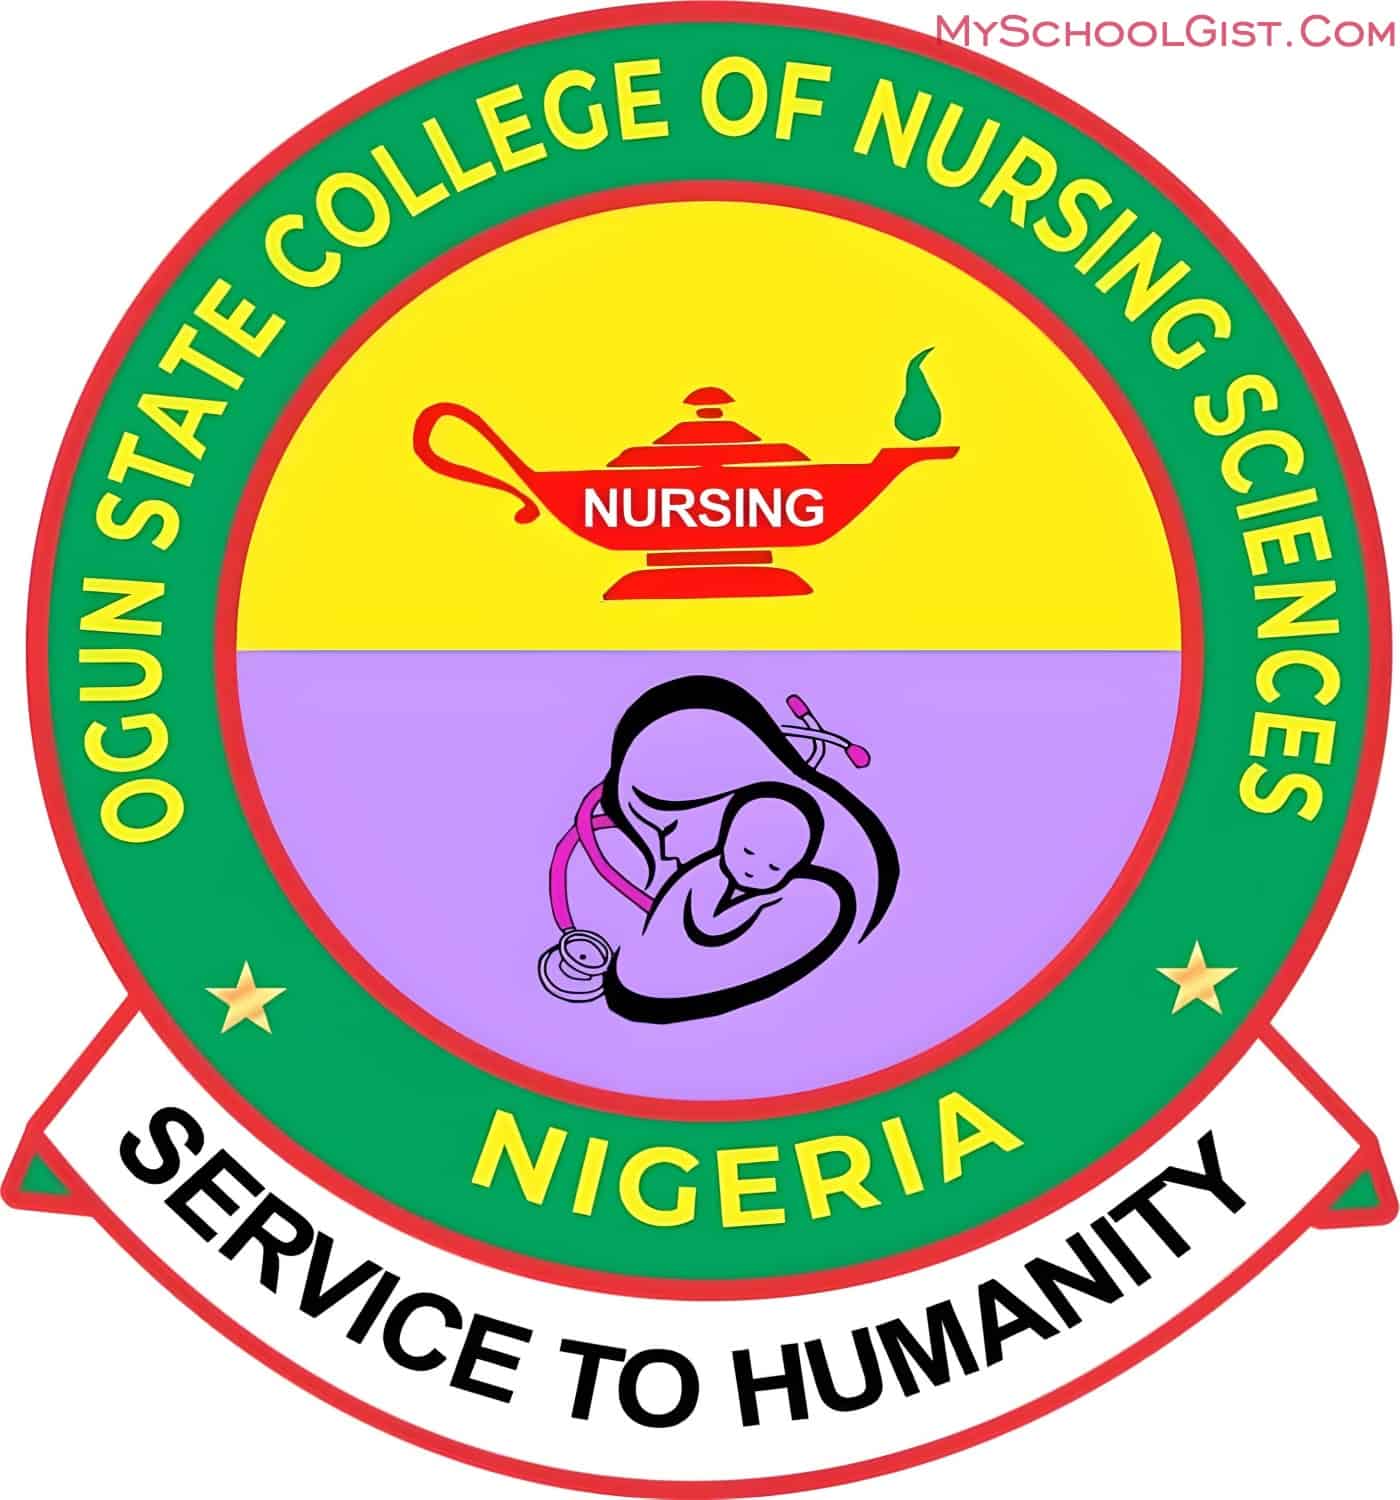 Ogun State College of Nursing Sciences (OGCON) Post UTME Form